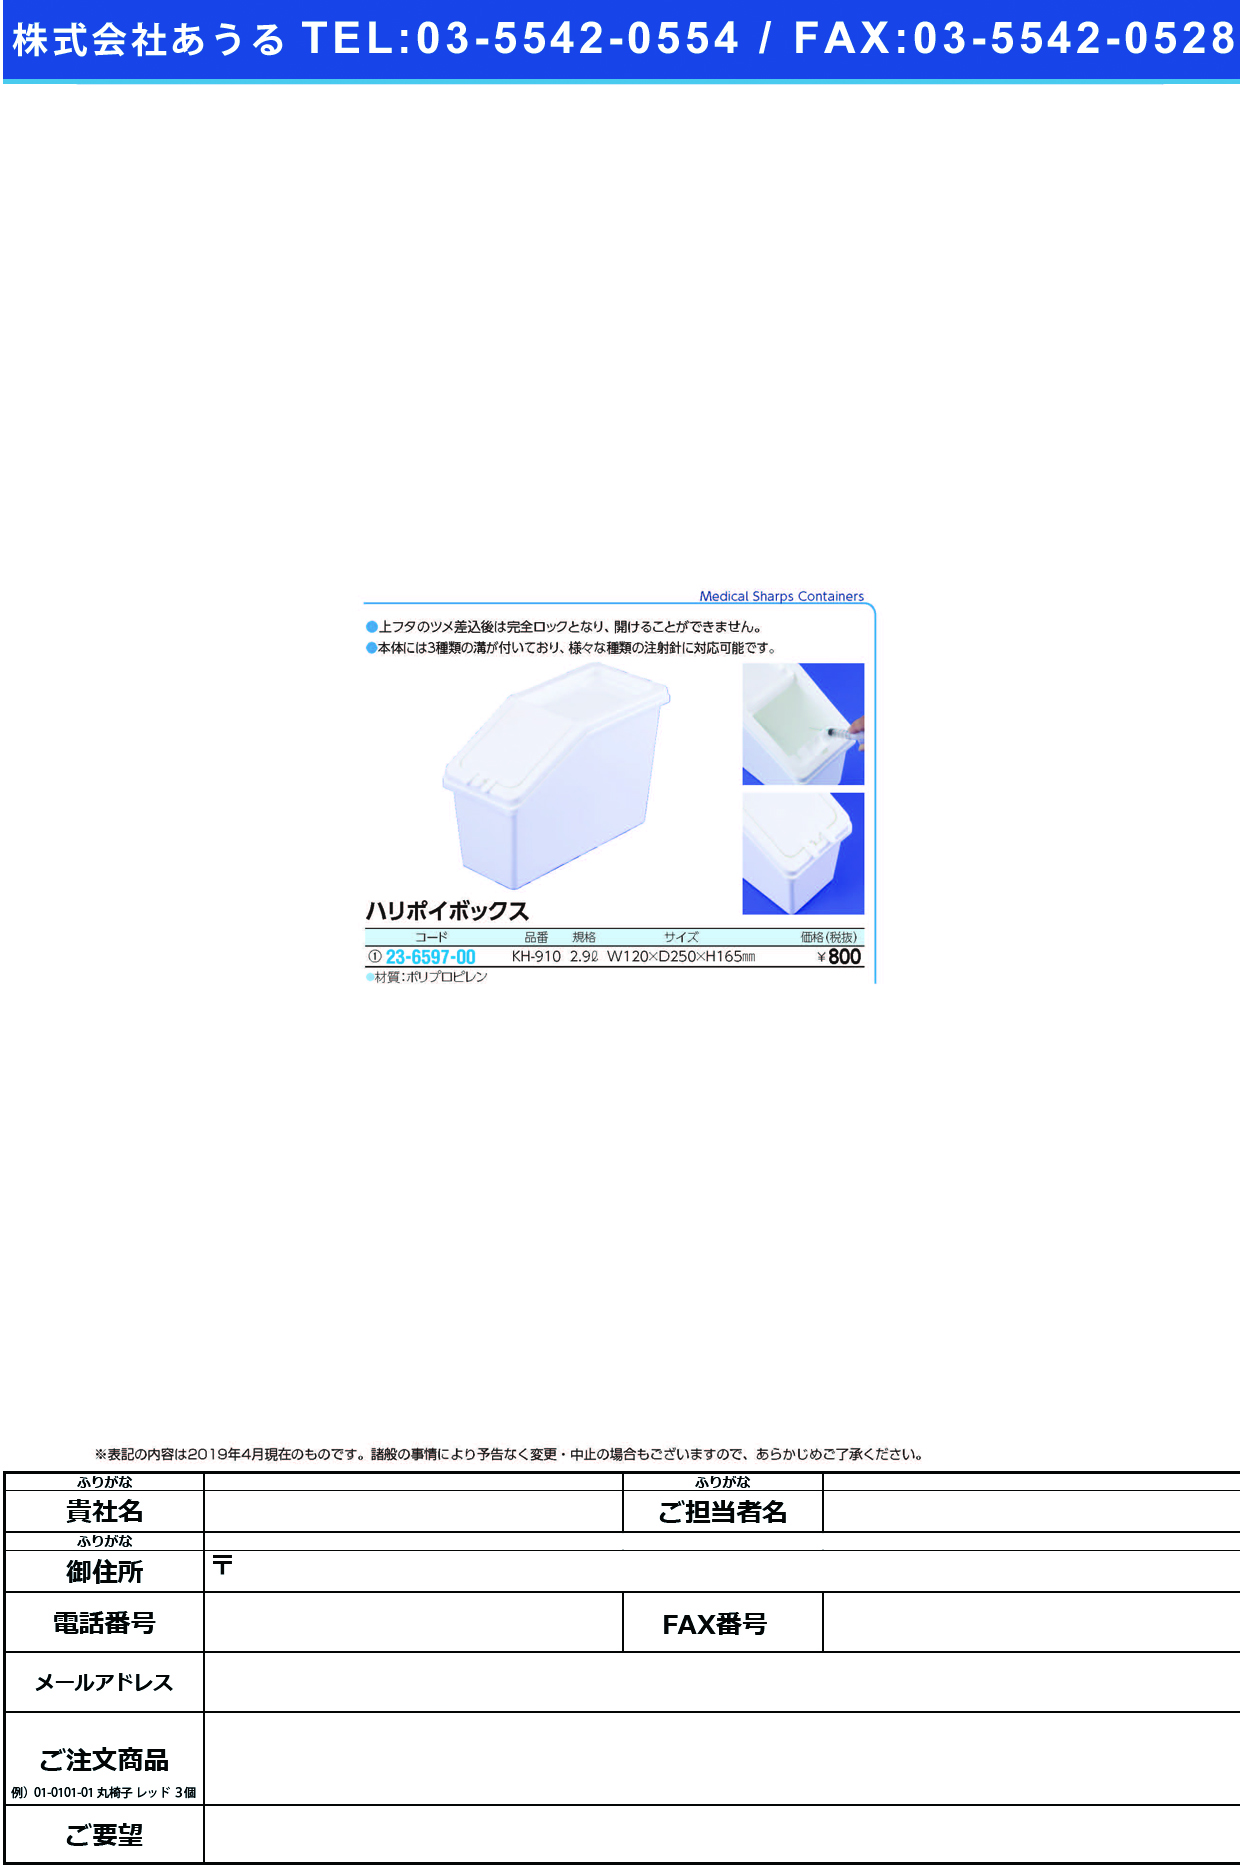 (23-6597-00)ハリポイボックス KH-910(2.9L) ﾊﾘﾎﾟｲﾎﾞｯｸｽ(ケルン)【1個単位】【2019年カタログ商品】